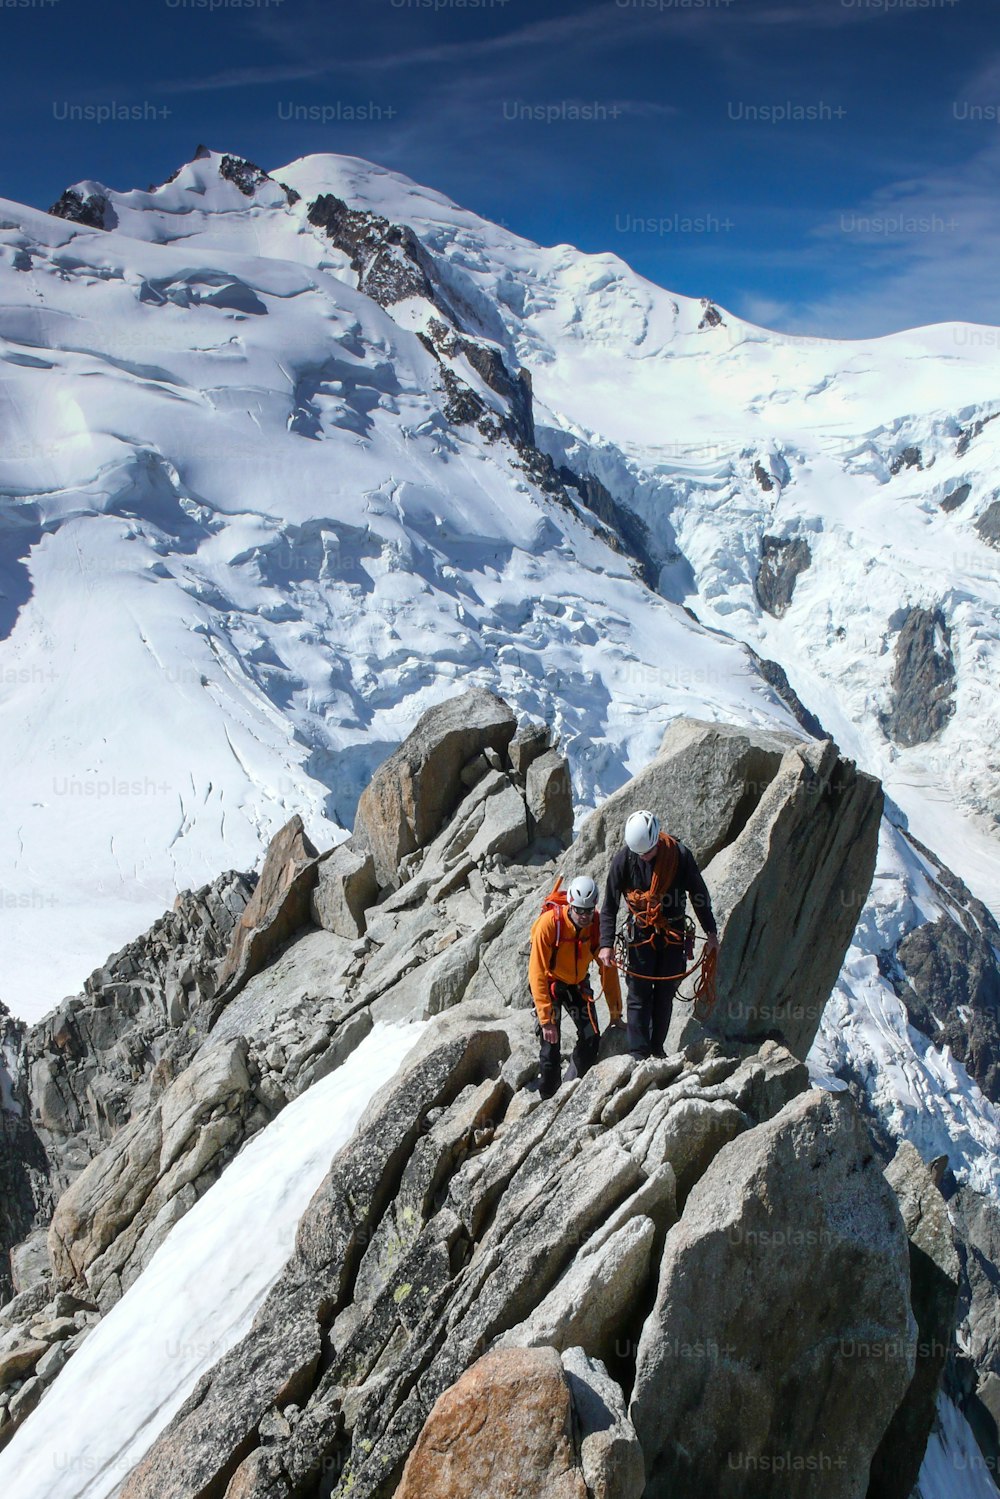 guide de montagne et un client masculin sur une crête rocheuse se dirigeant vers un haut sommet des Alpes françaises près de Chamonix par une belle journée d’été